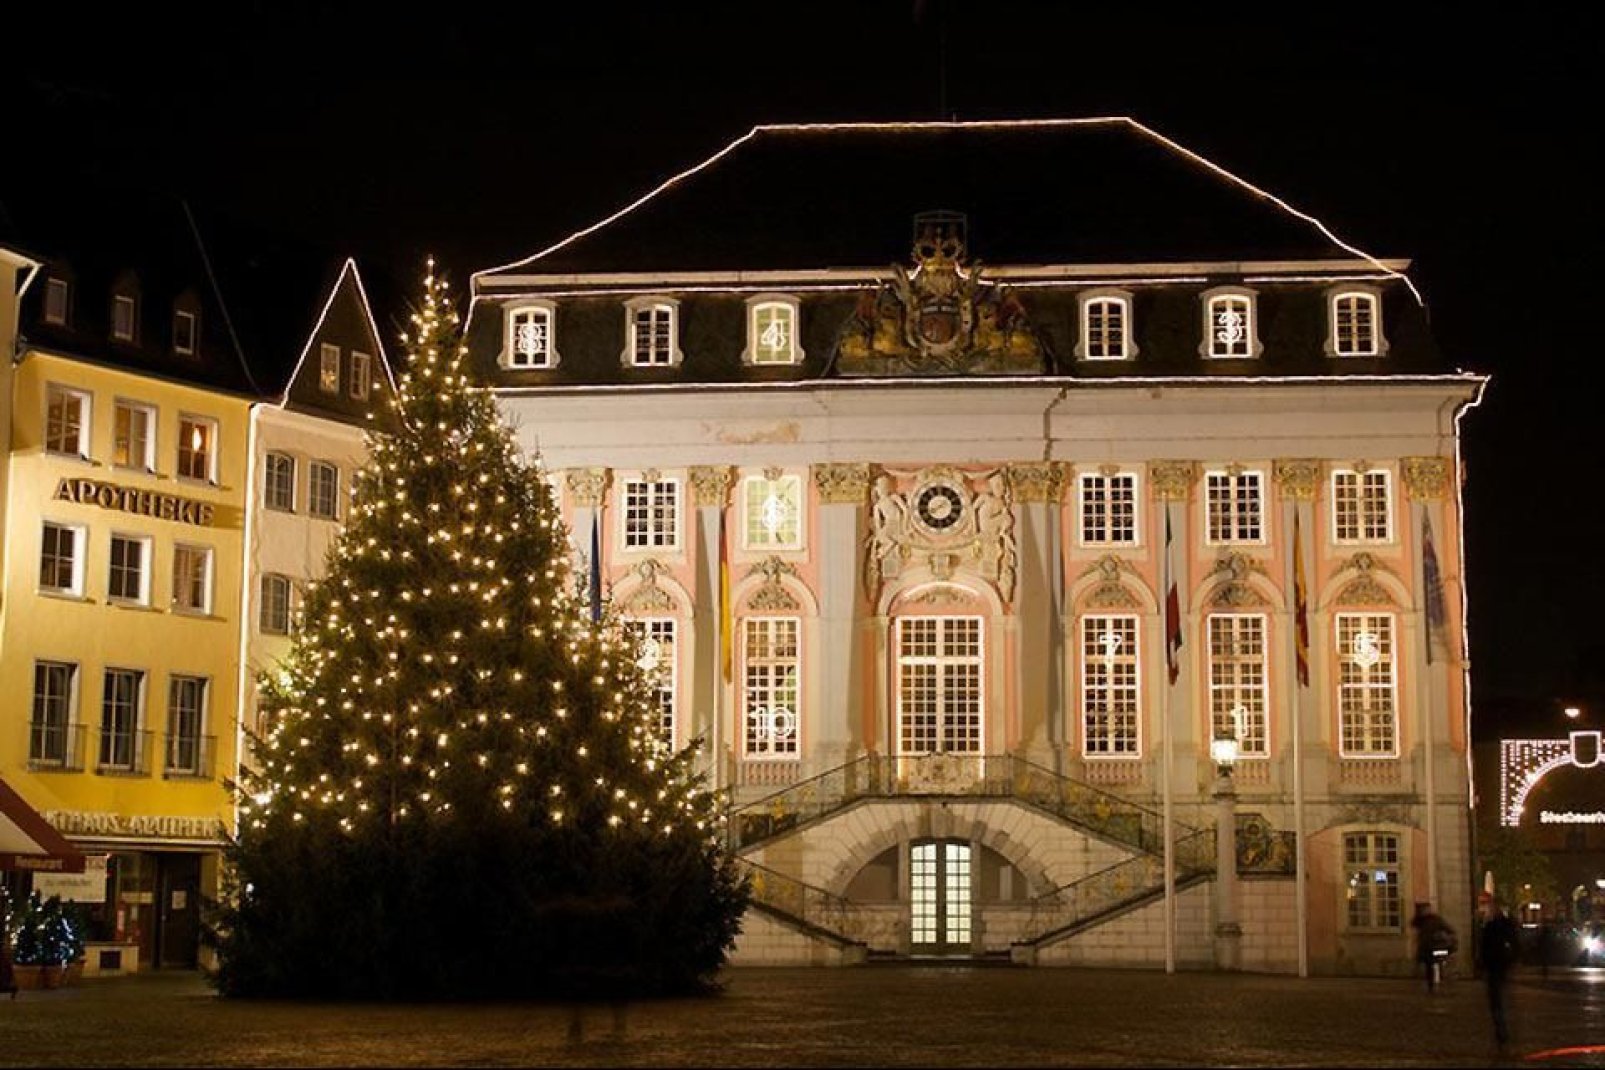 Il municipio di Bonn si trova nel cuore del centro storico.